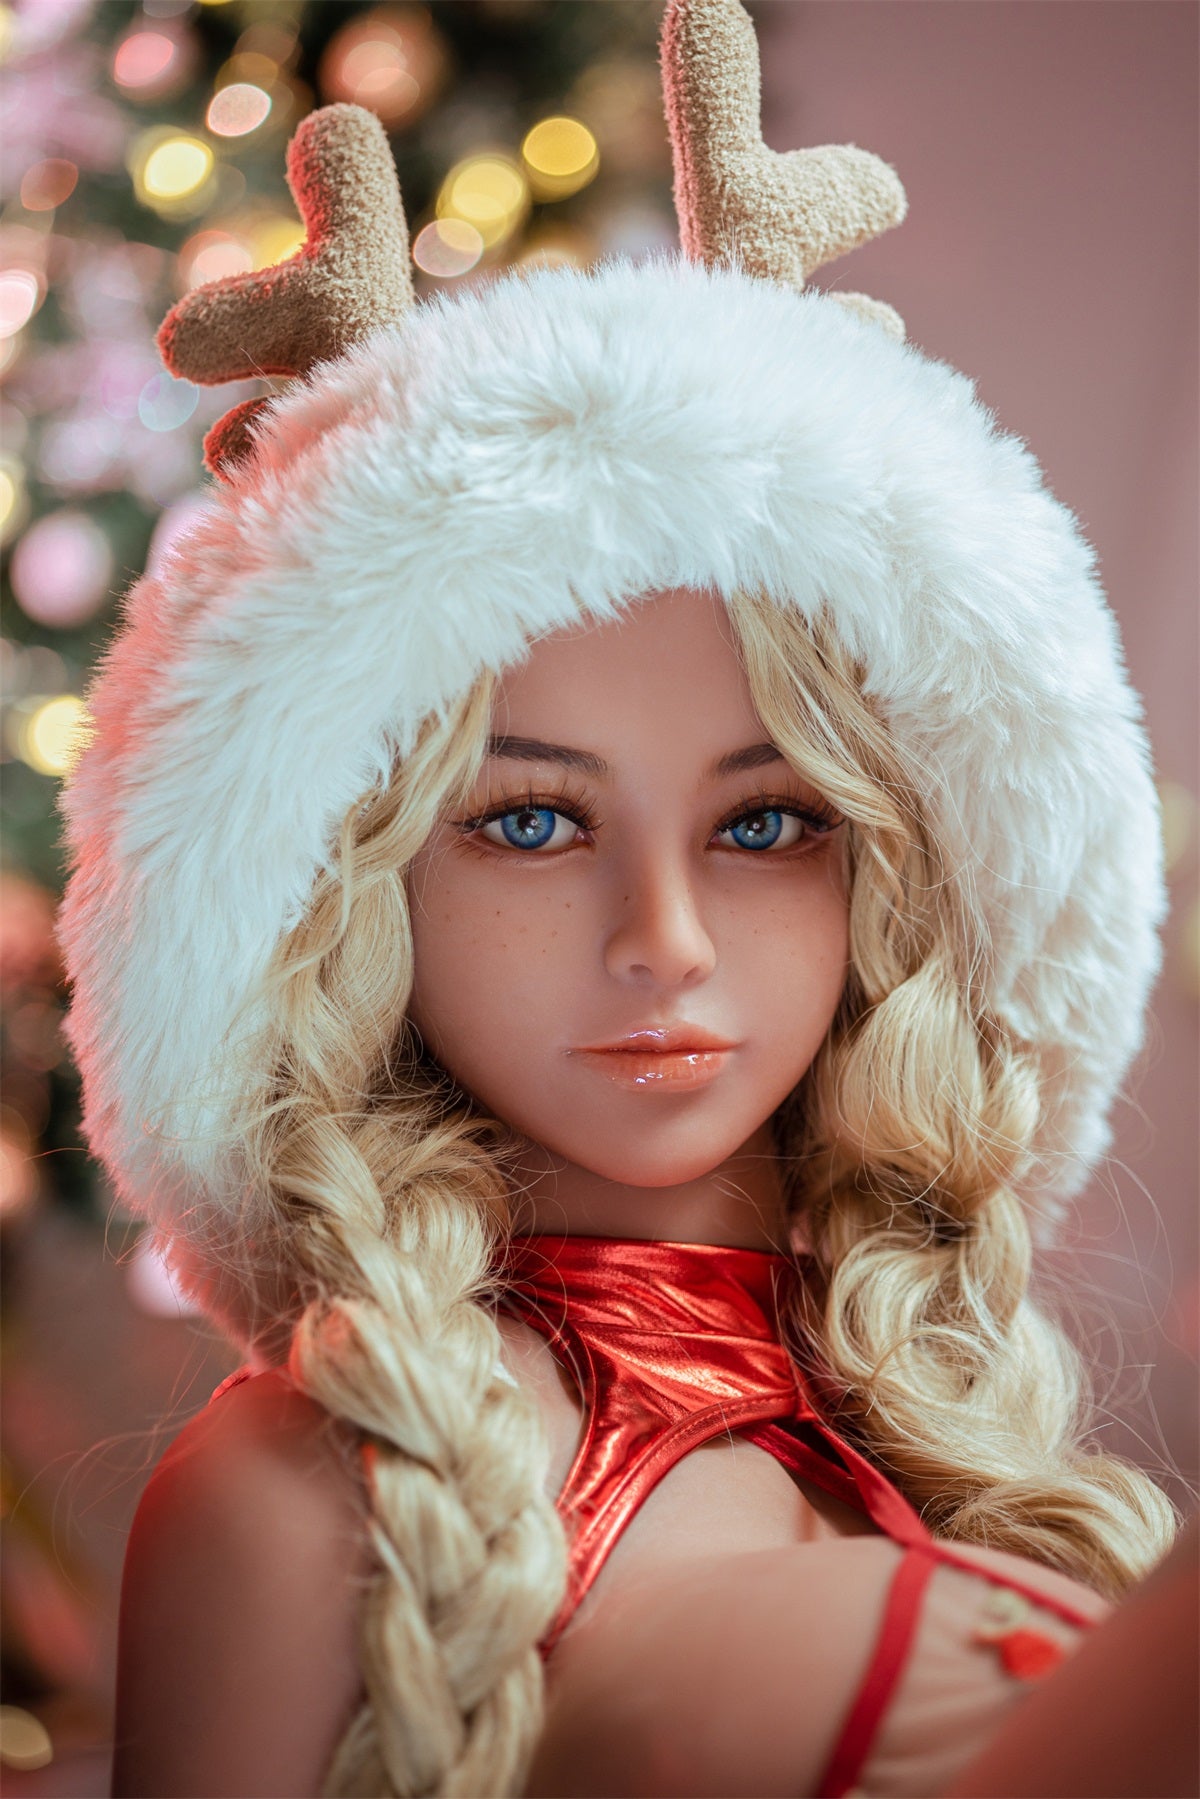 Aibei | Monaisha - 4ft12 (153cm) Christmas Style Chubby Love Doll With Blonde Curly Hair